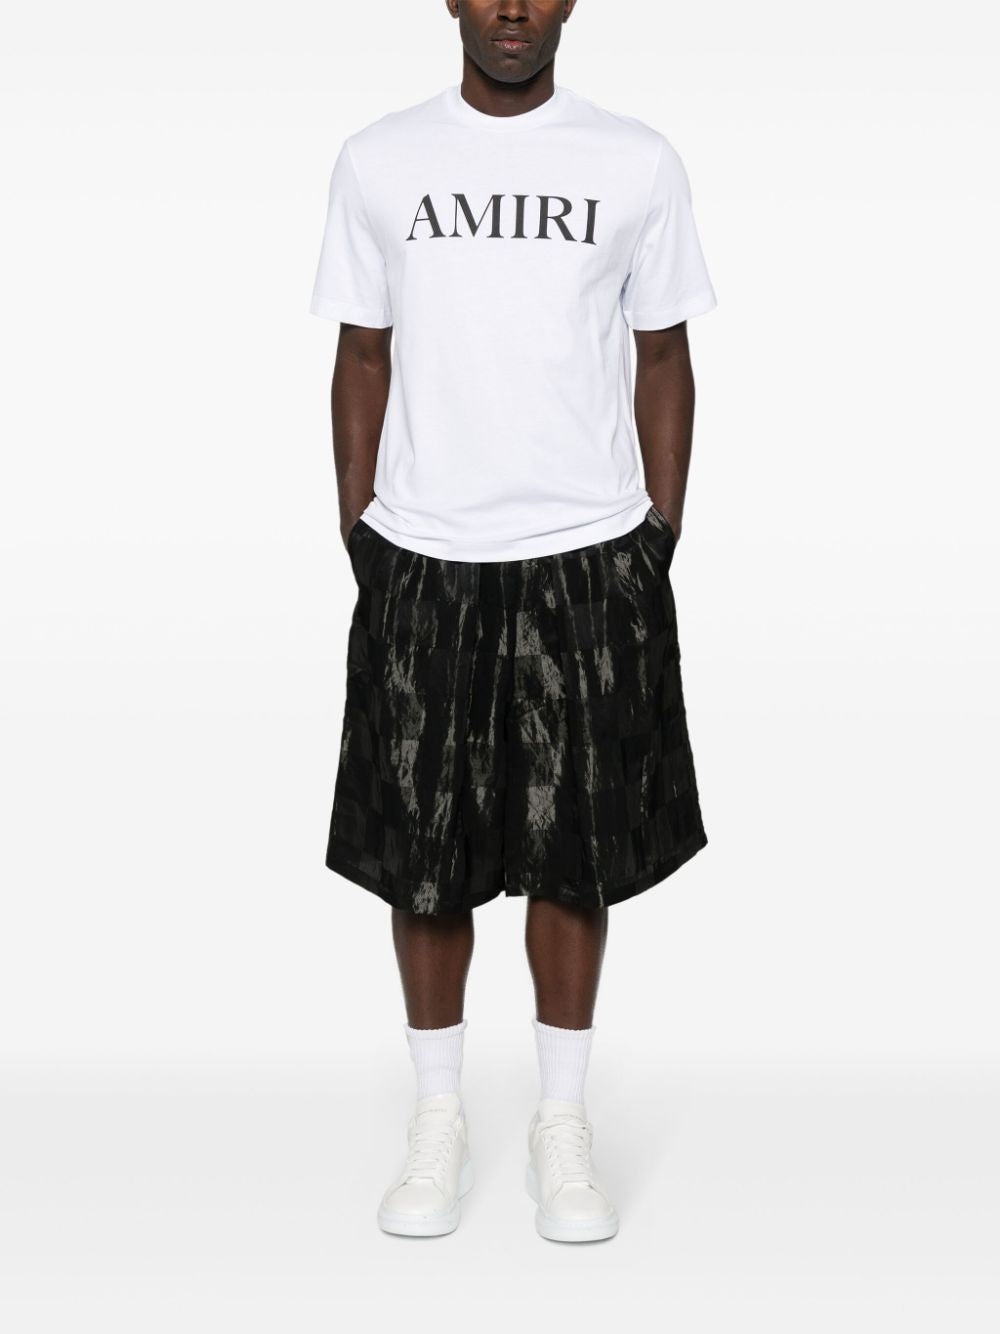 AMIRI White Core Logo Tee for Men - FW24 Collection